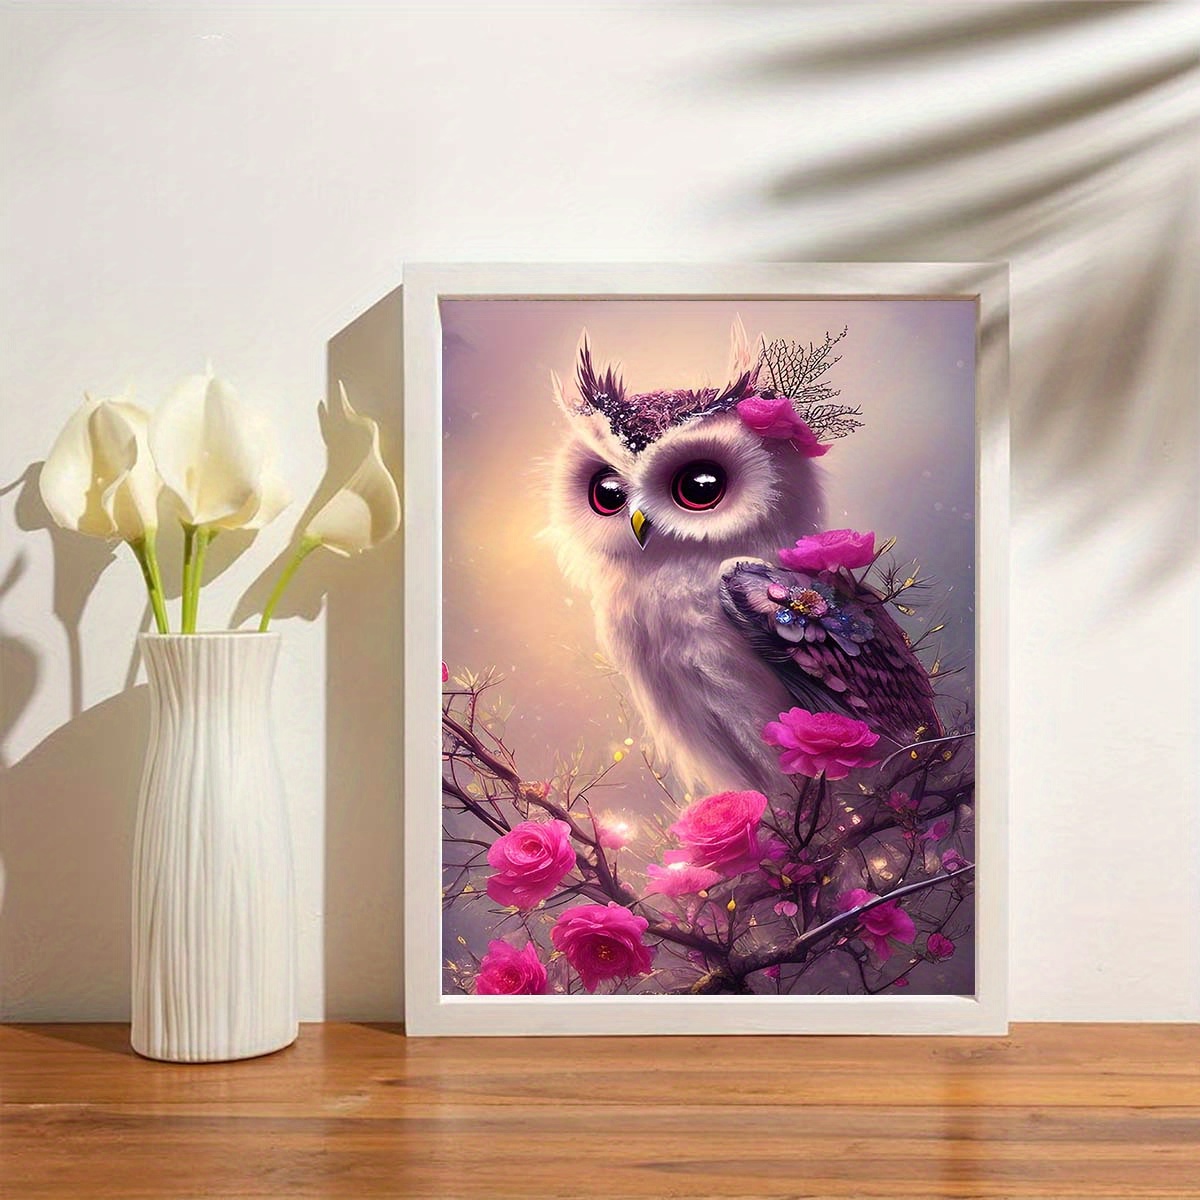 Diamond Painting Kits for Adults, Owl 5D Diamond Art Kits, Full